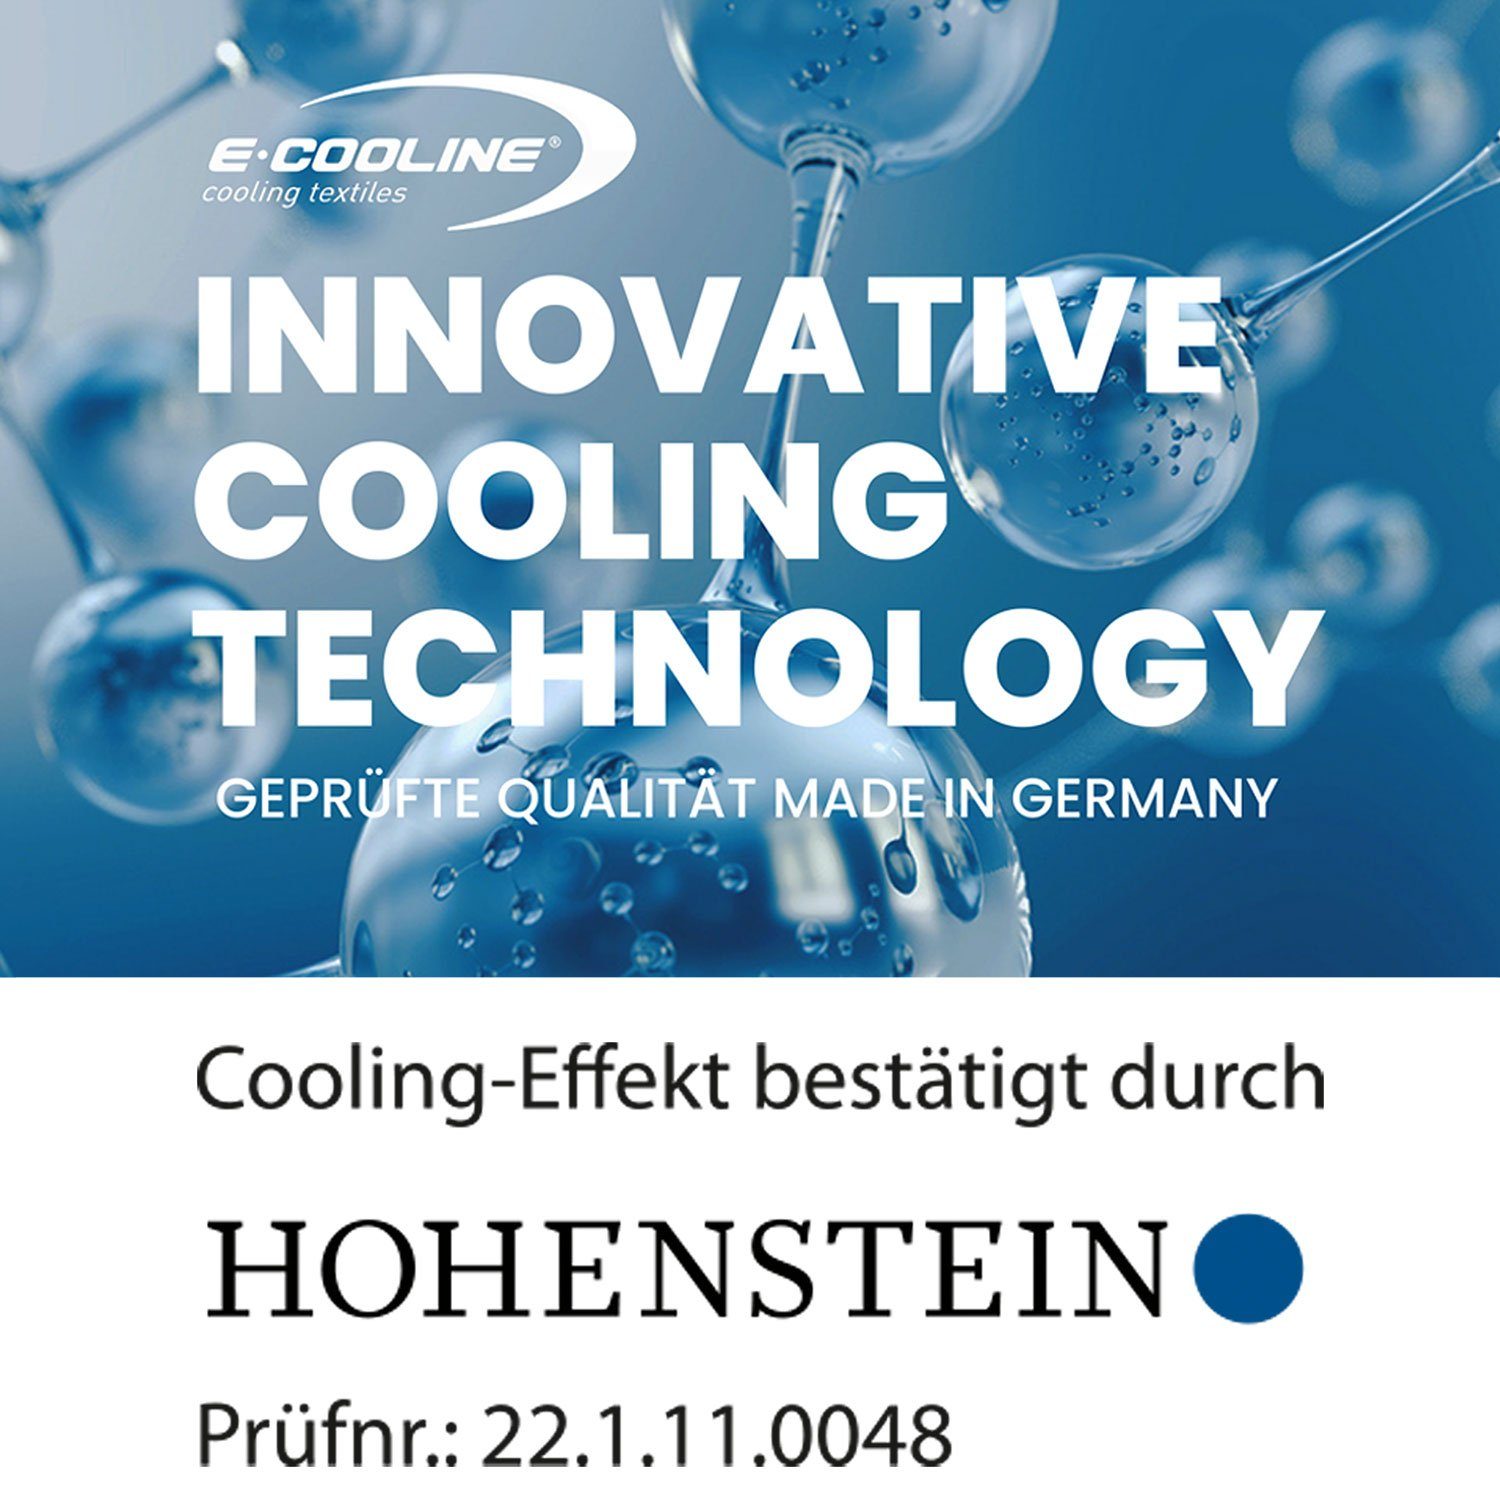 aktive Bandana Kühlung - durch stundenlange Wasser, kühlend - Klimaanlage zum Anziehen Schwarz mit Aktivierung Kühlung, E.COOLINE